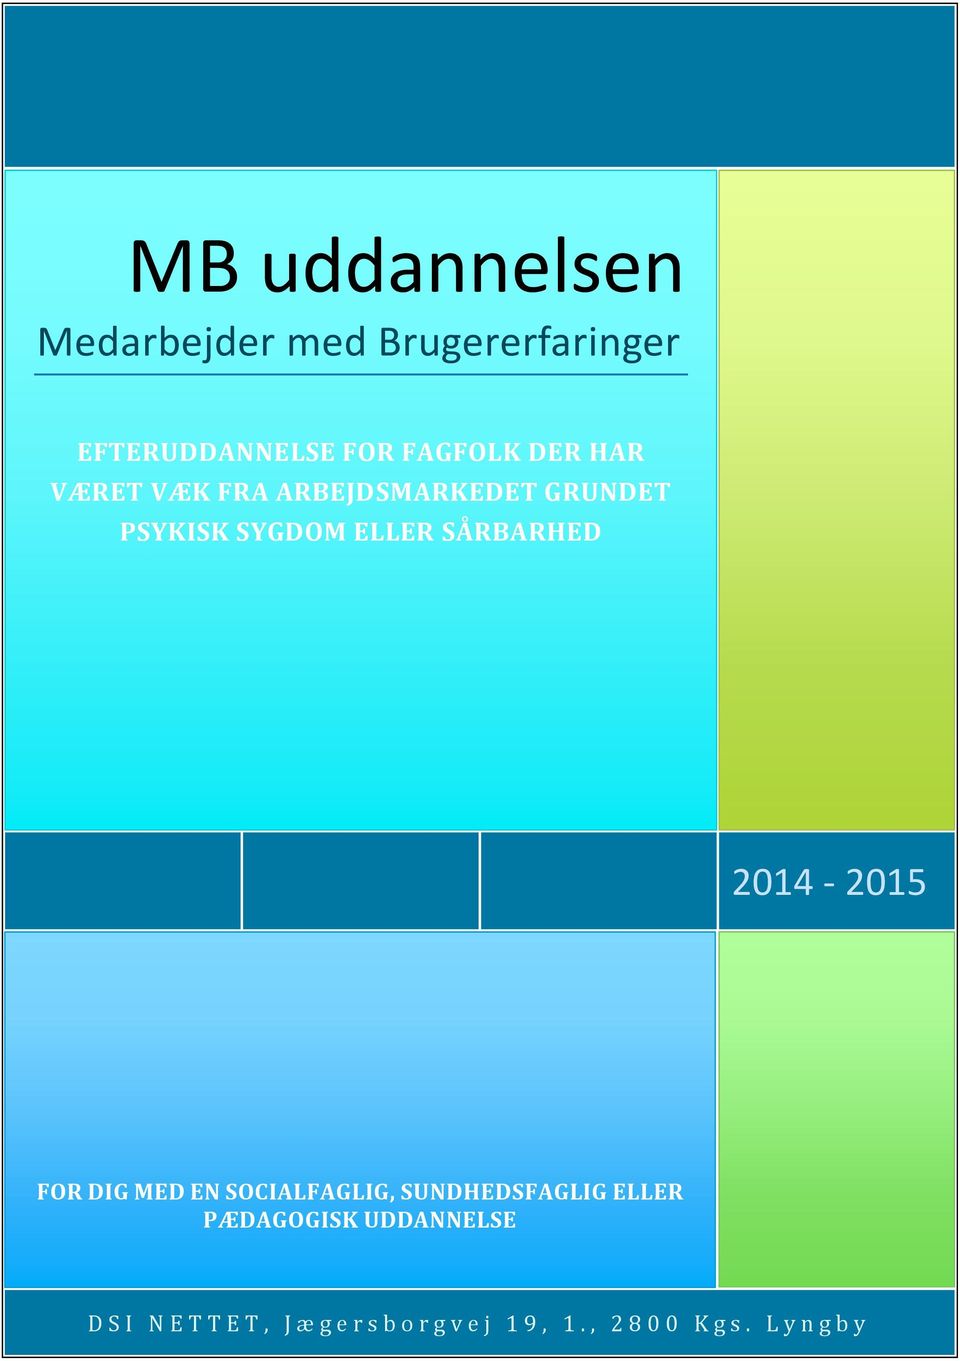 2014-2015 FOR DIG MED EN SOCIALFAGLIG, SUNDHEDSFAGLIG ELLER PÆDAGOGISK